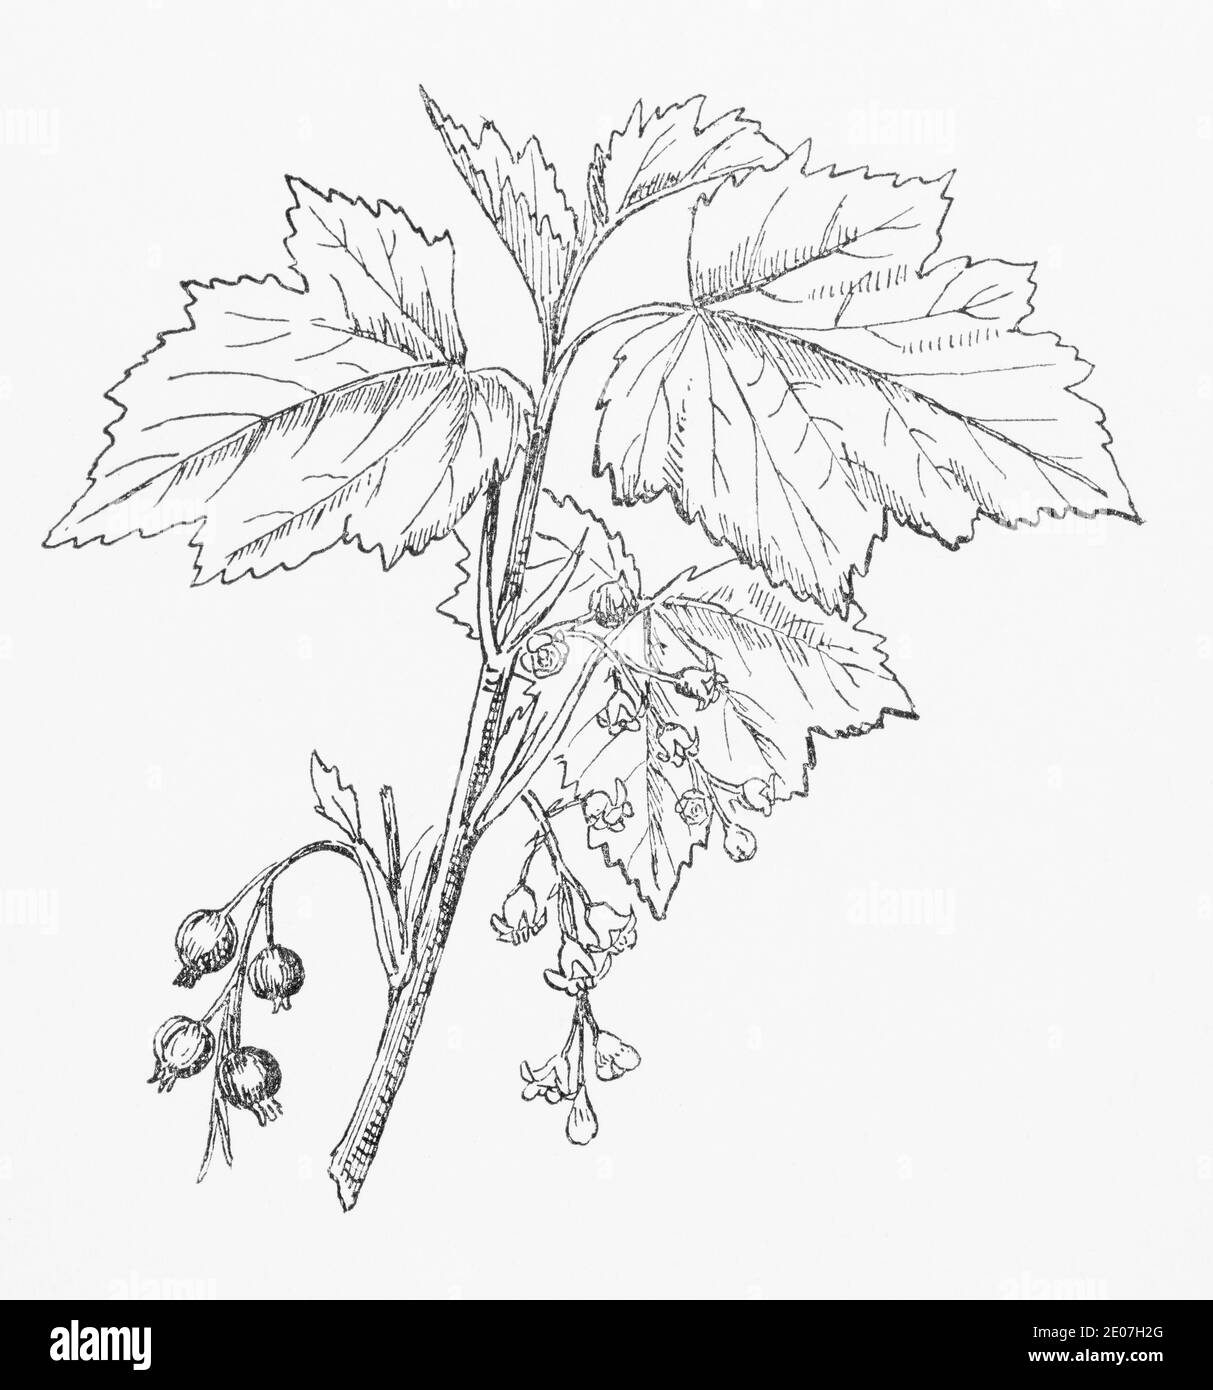 Alte botanische Illustration Gravur von Black Currant, Blackcurrant / Ribes nigrum. Traditionelle Heilkräuter Pflanze. Siehe Hinweise Stockfoto